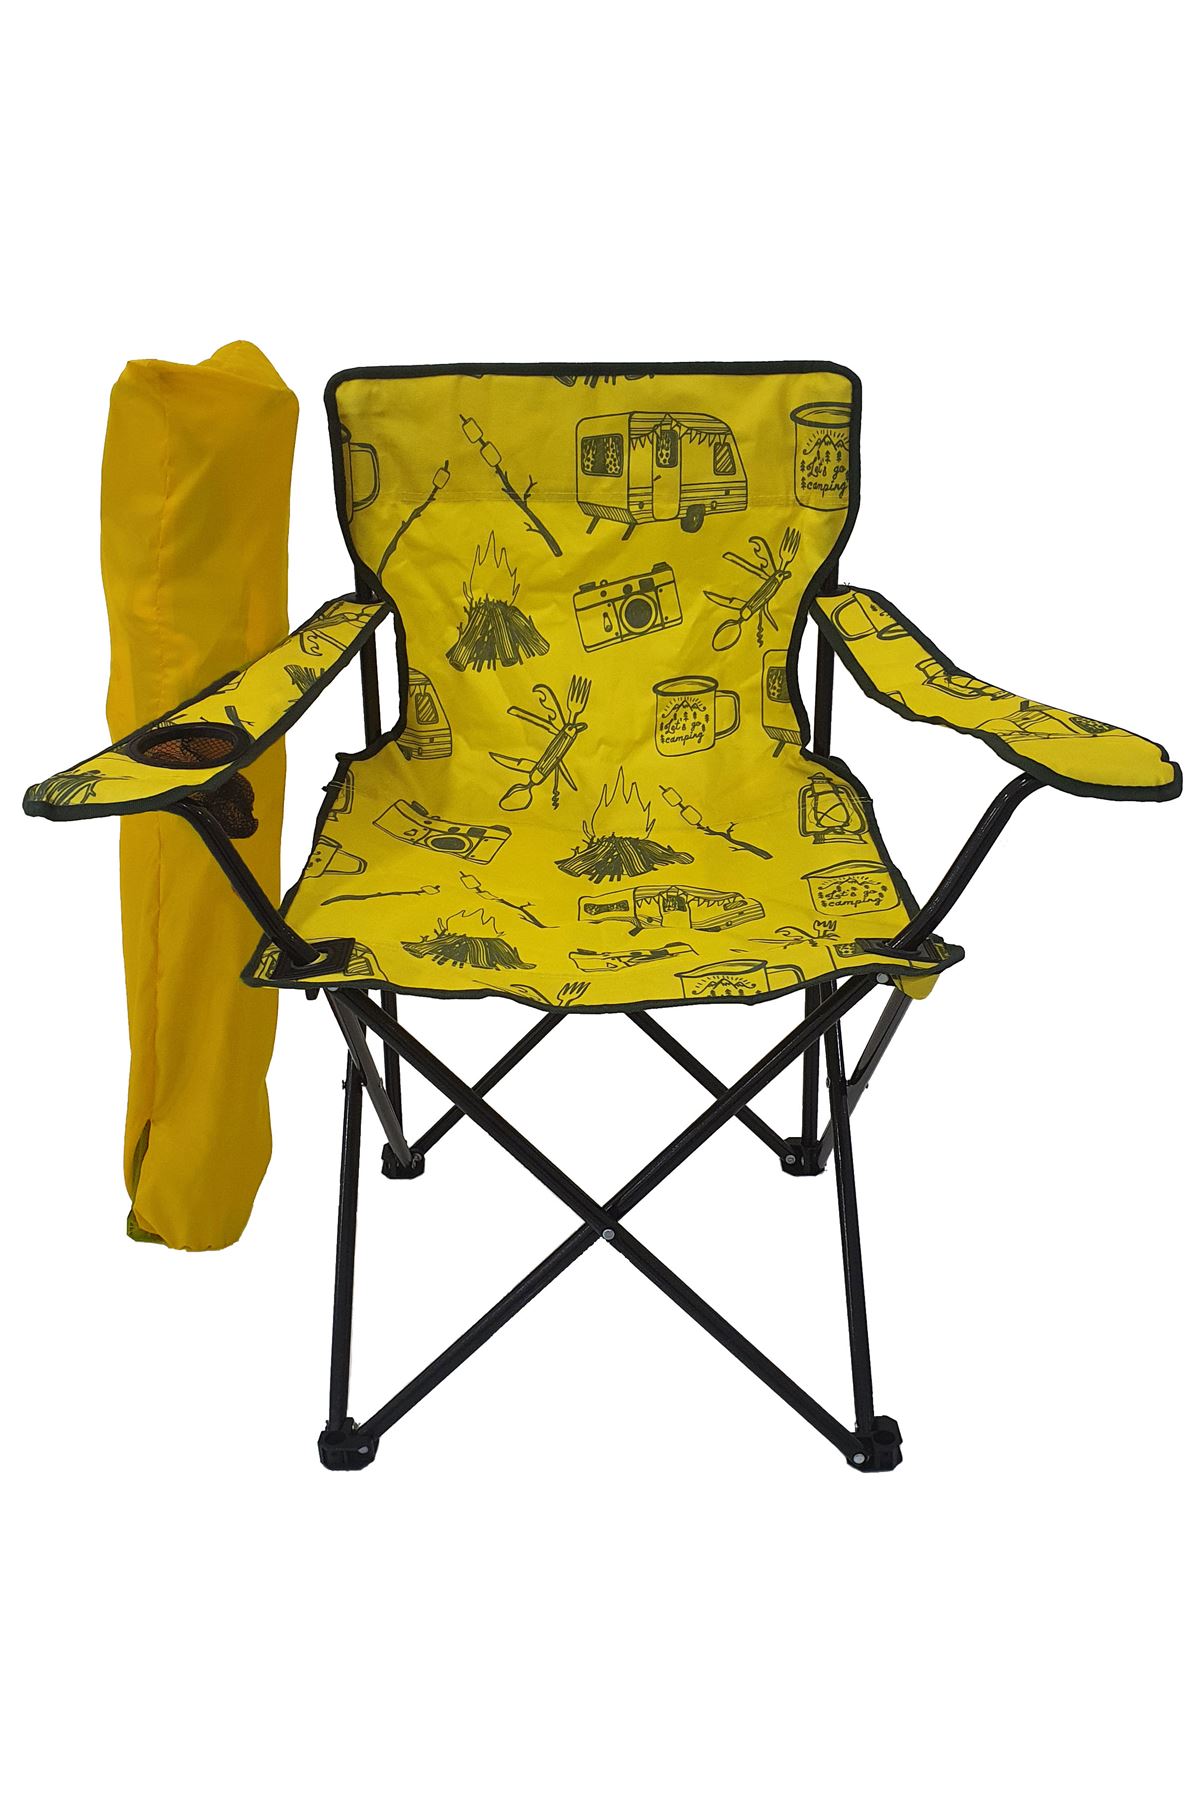 Bofigo 3 Adet Kamp Sandalyesi Katlanır Sandalye Bahçe Koltuğu Piknik Plaj Sandalyesi Desenli Karma